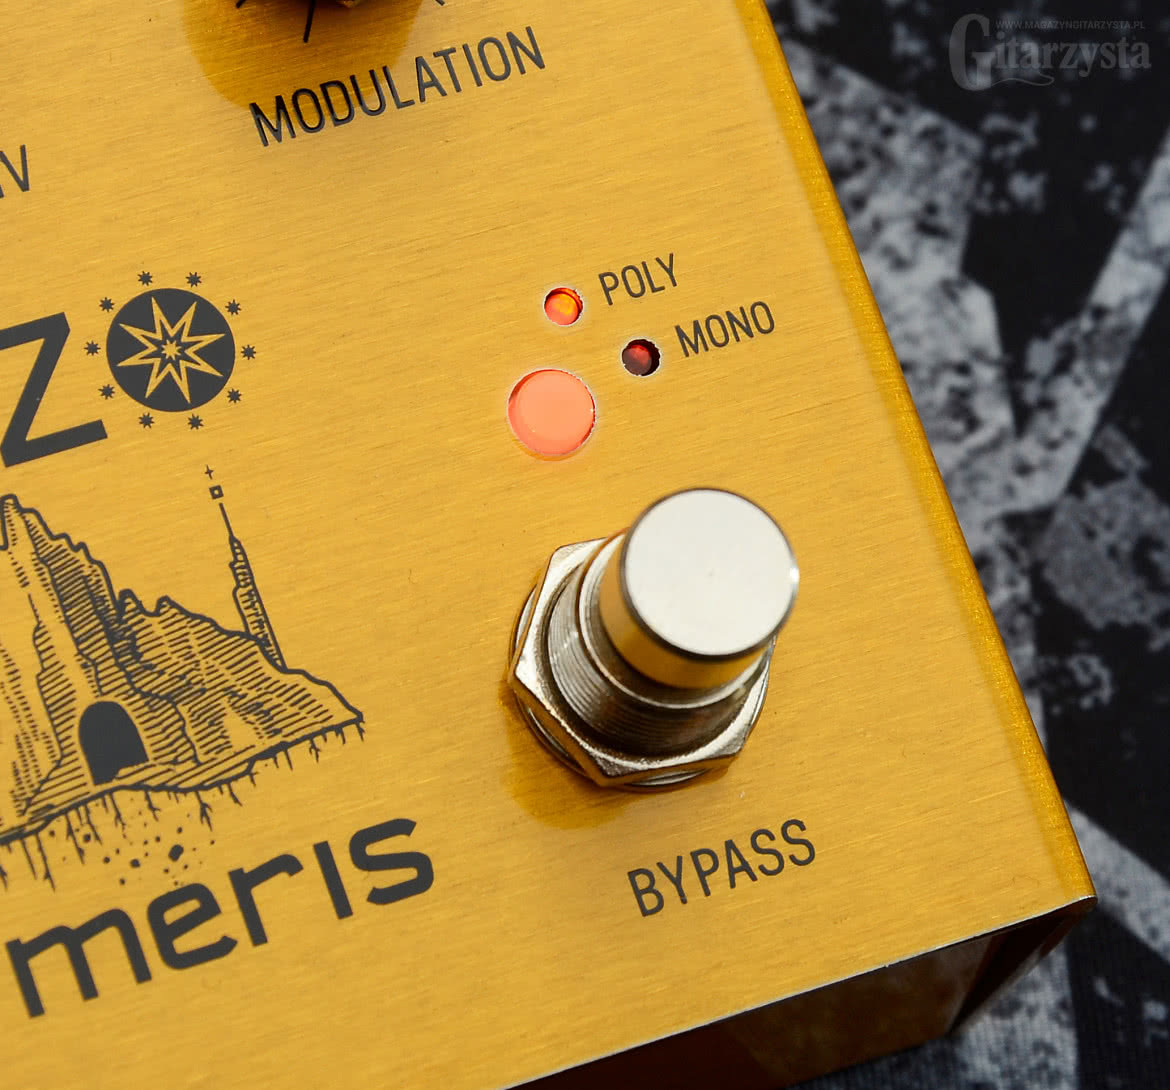 Przycisk BYPASS poza aktywacją pozwala wybrać jeden z 4 trybów pracy (Poly/ Mono,Arp,Dry) oraz 2 kształtów przebiegu syntezatora.